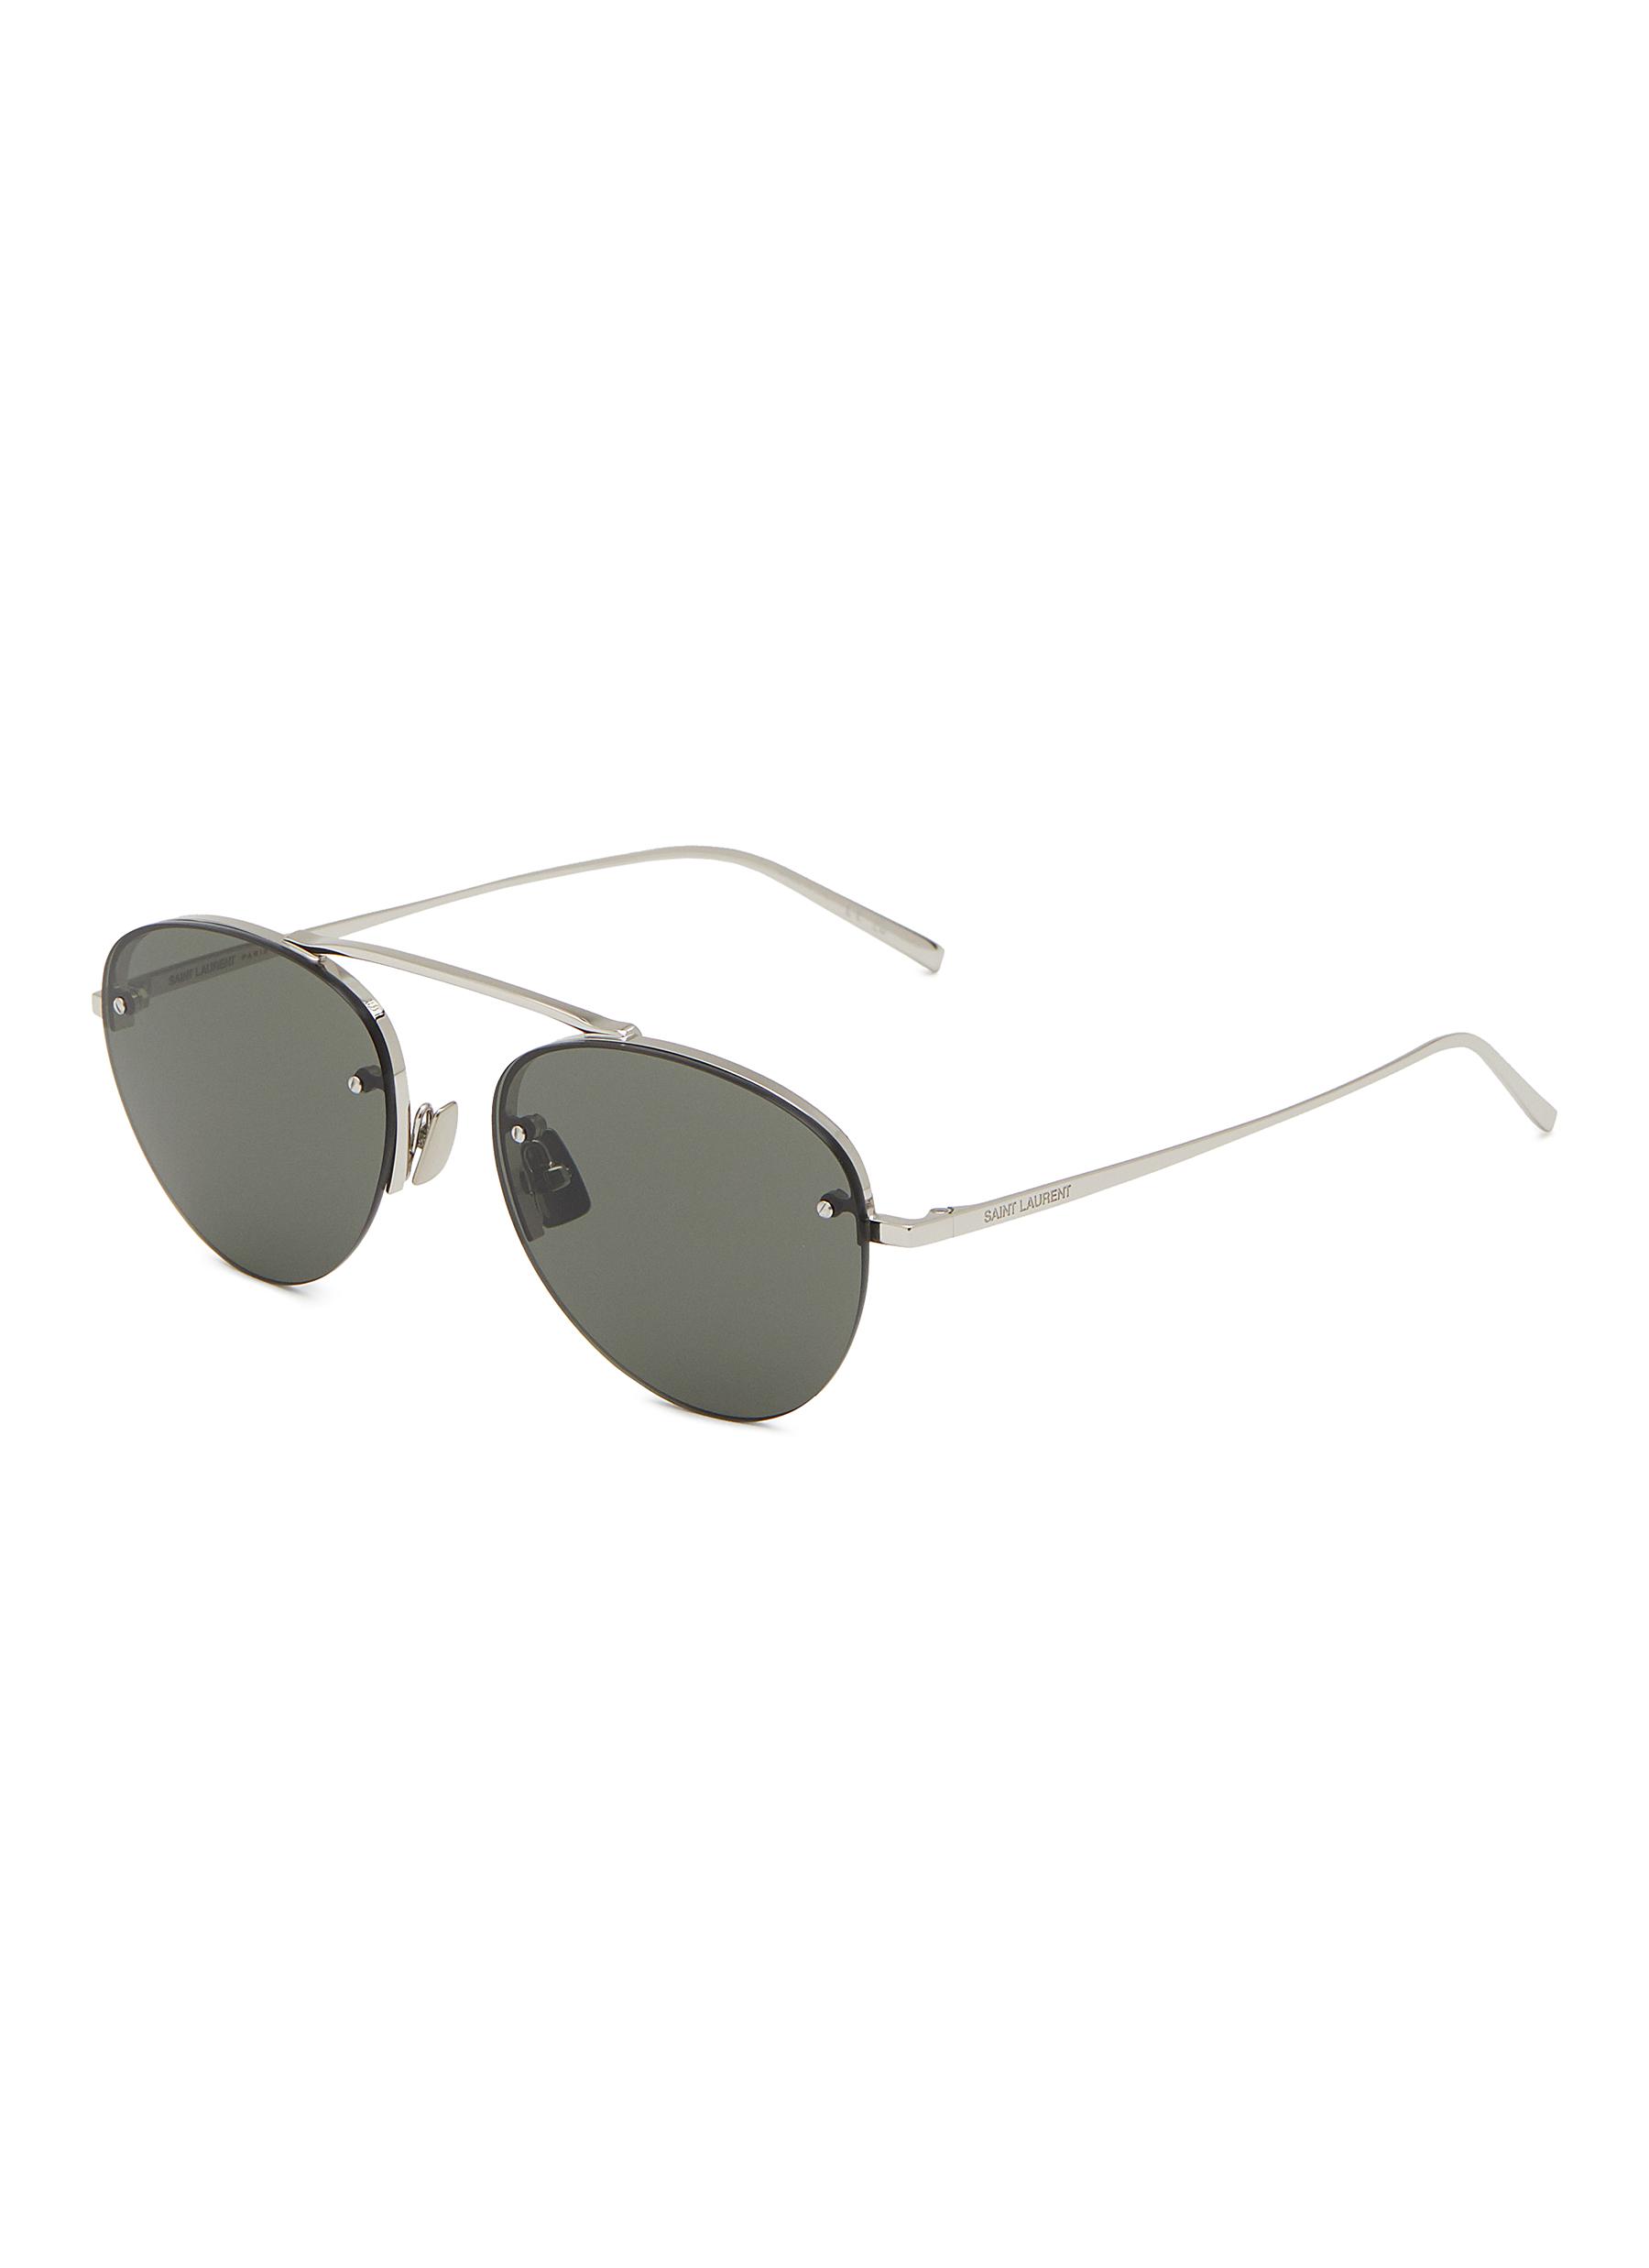 SL 575-002 Metal Aviator Sunglasses